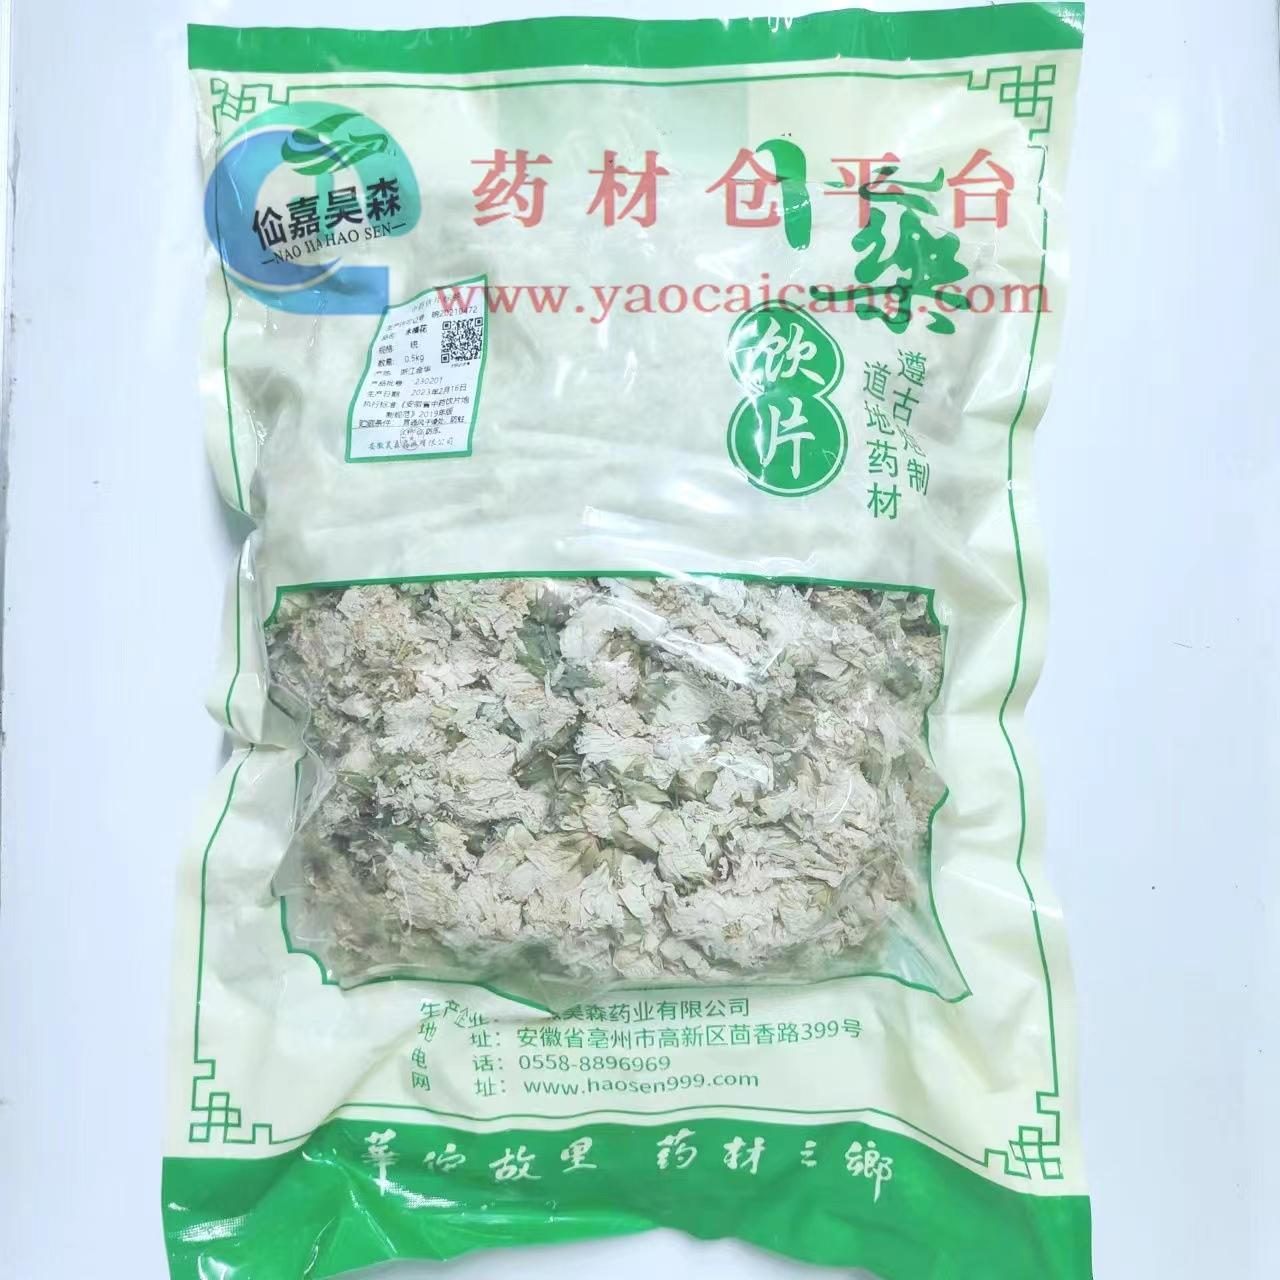 【】木槿花-统-0.5kg/袋-安徽昊森药业有限公司